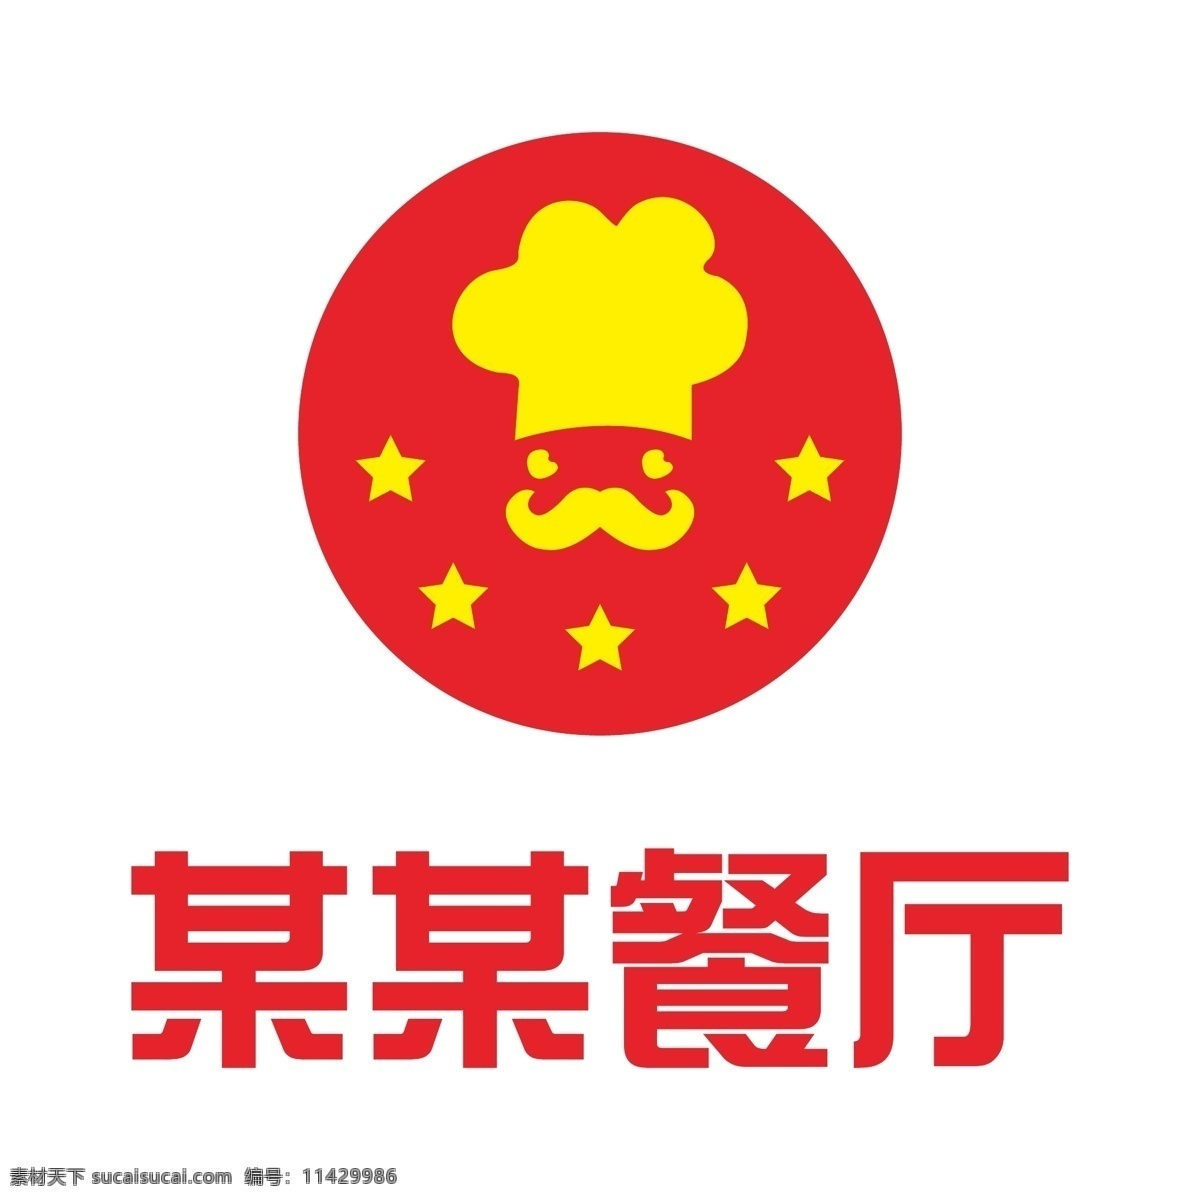 创意 餐饮 logo 餐饮logo ai矢量图 logo设计